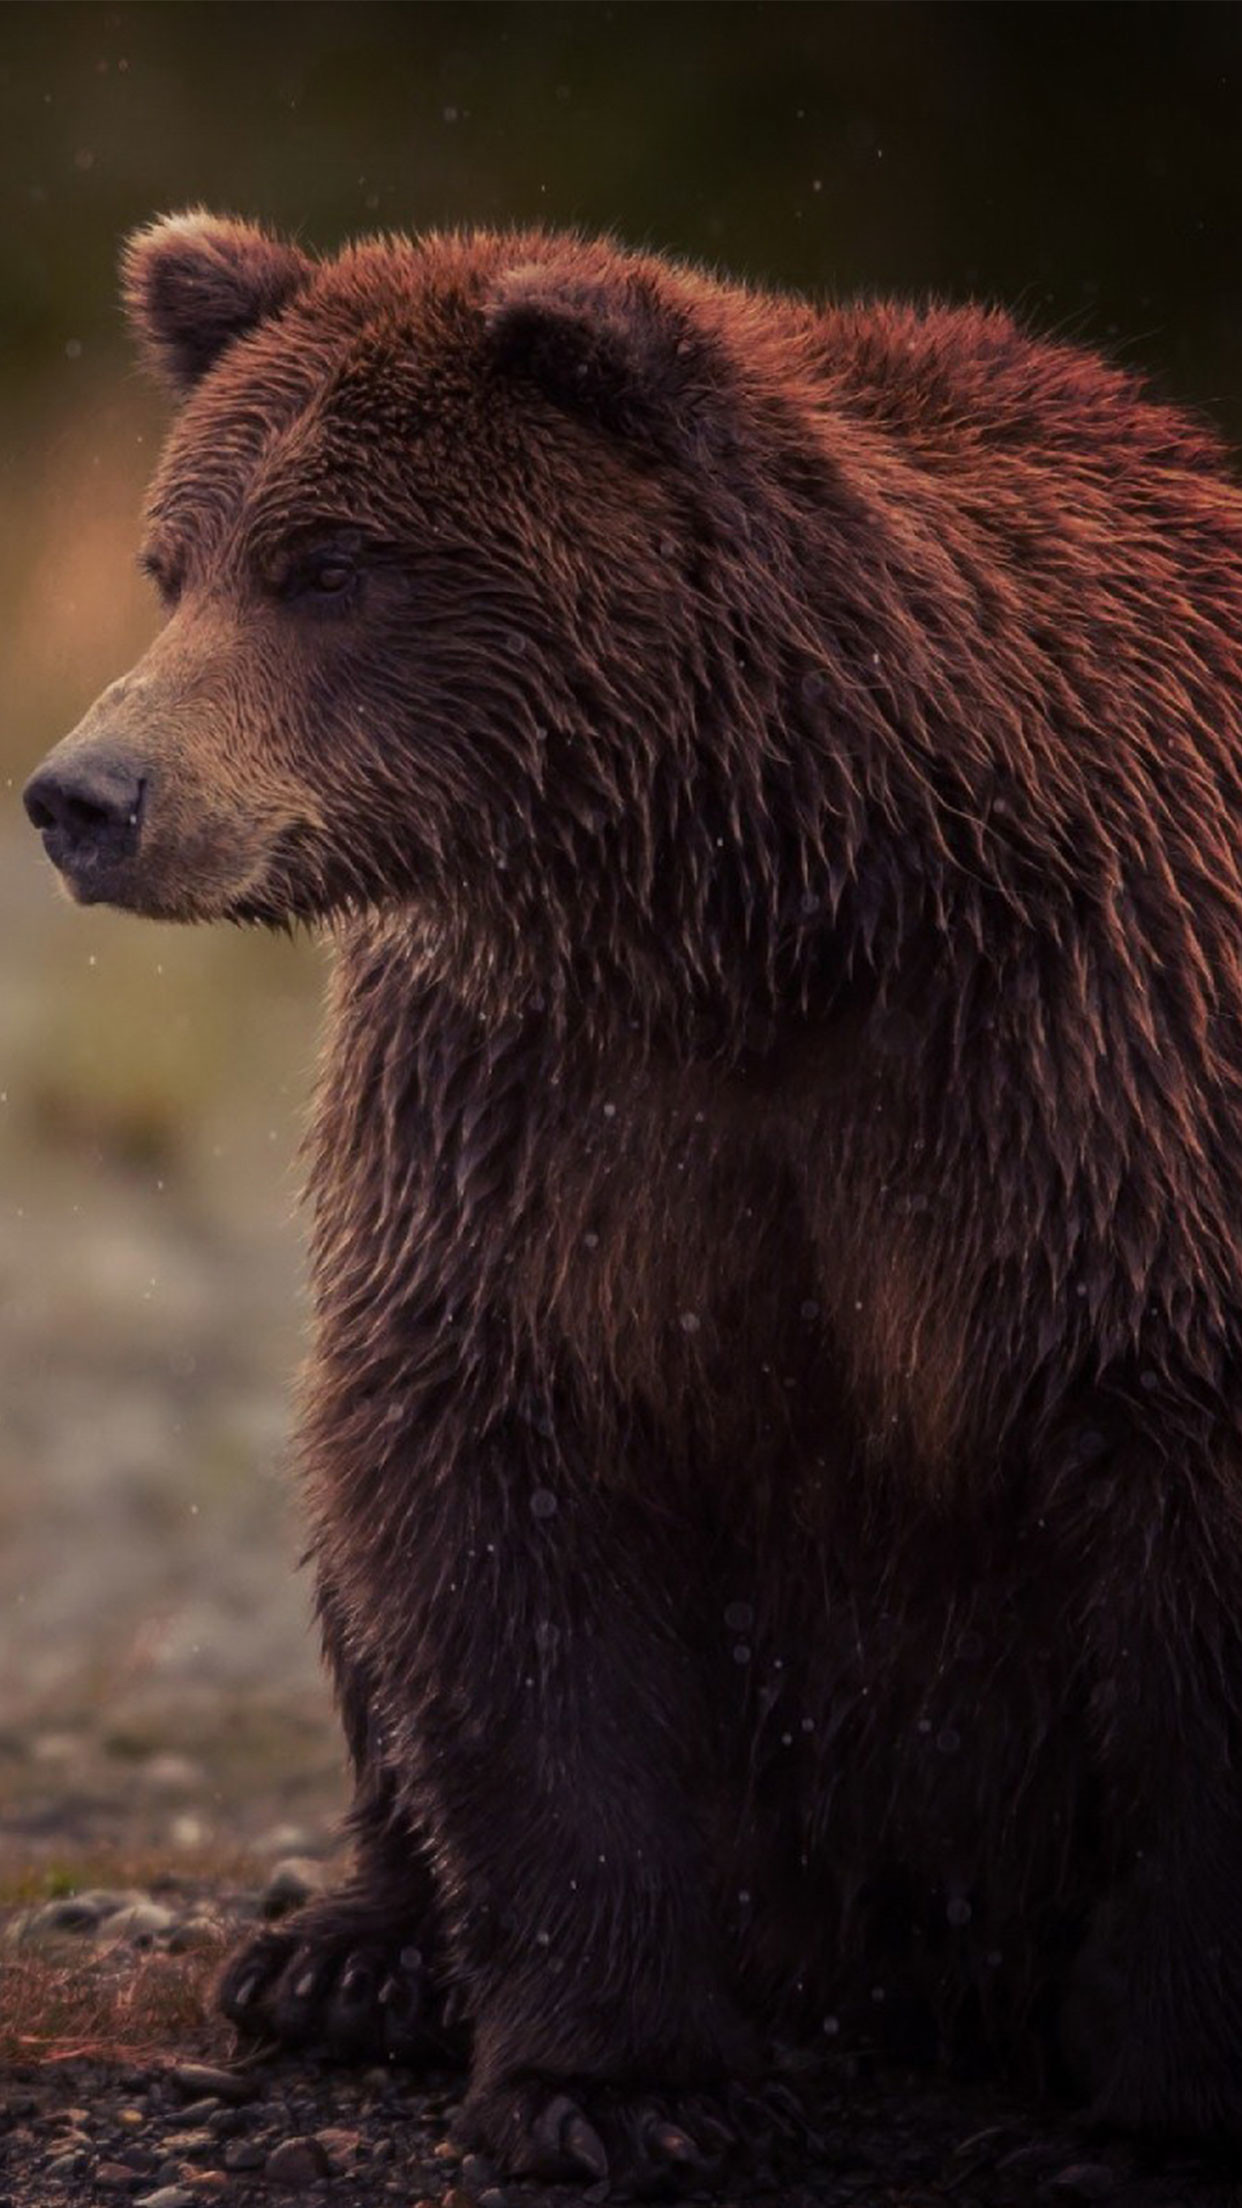 orso iphone wallpaper,orso bruno,orso,orso grizzly,animale terrestre,orso kodiak